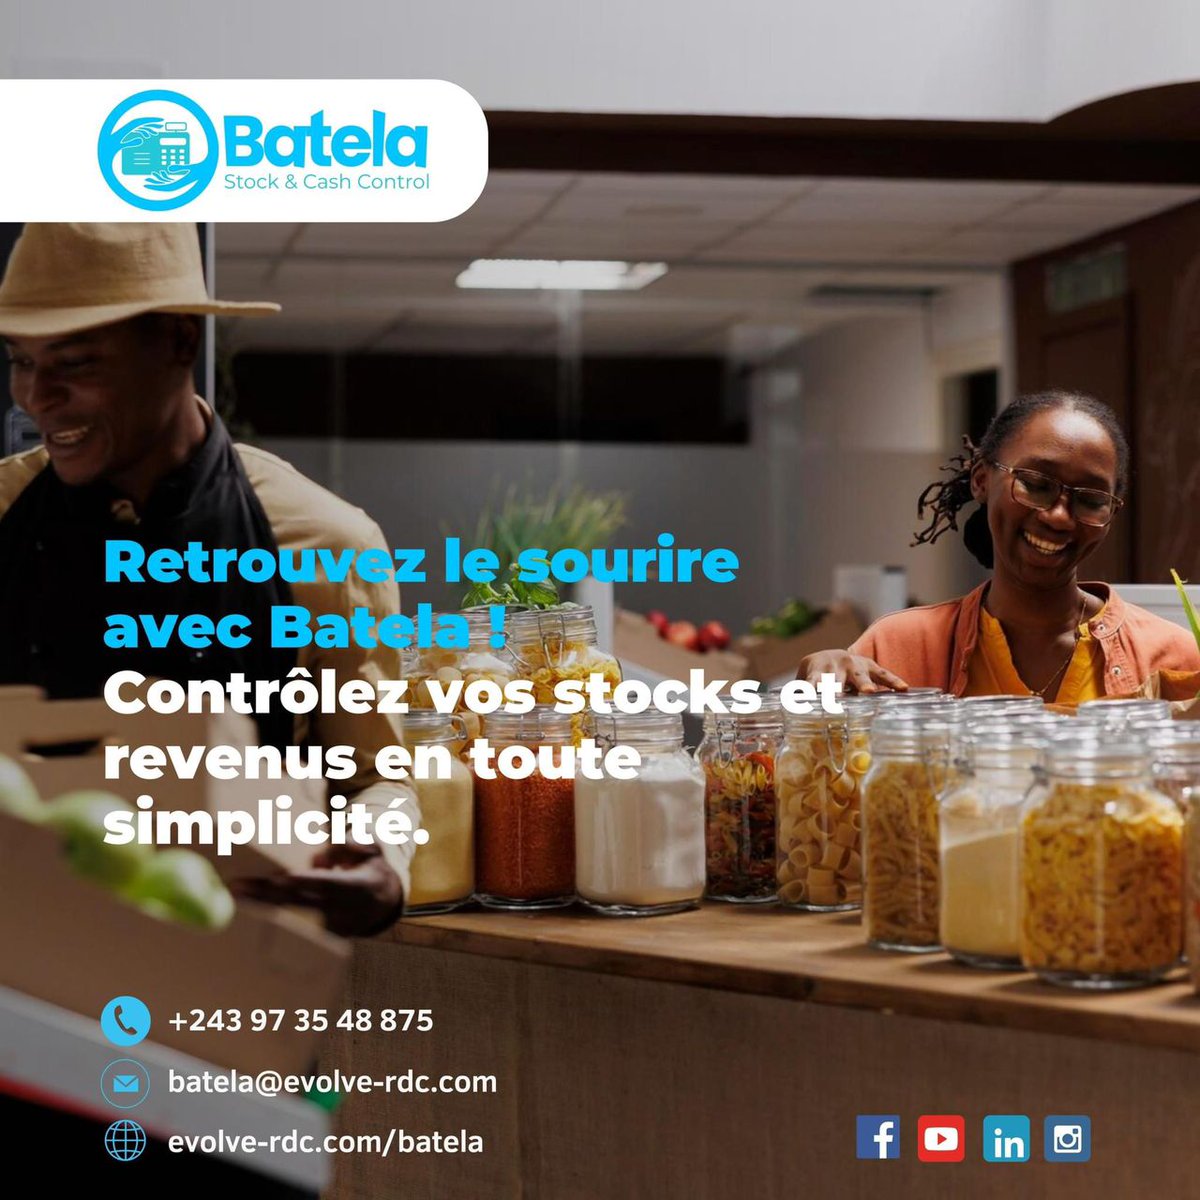 Si vous êtes propriétaire d'un magasin, resto ou une pharmacie, je vous propose #BATELA. Gérez votre établissement en toute confiance avec une plateforme qui surveille et contrôle efficacement vos ventes et stocks, que vous soyez sur place ou à distance.
#StartupRDC #RetailTech